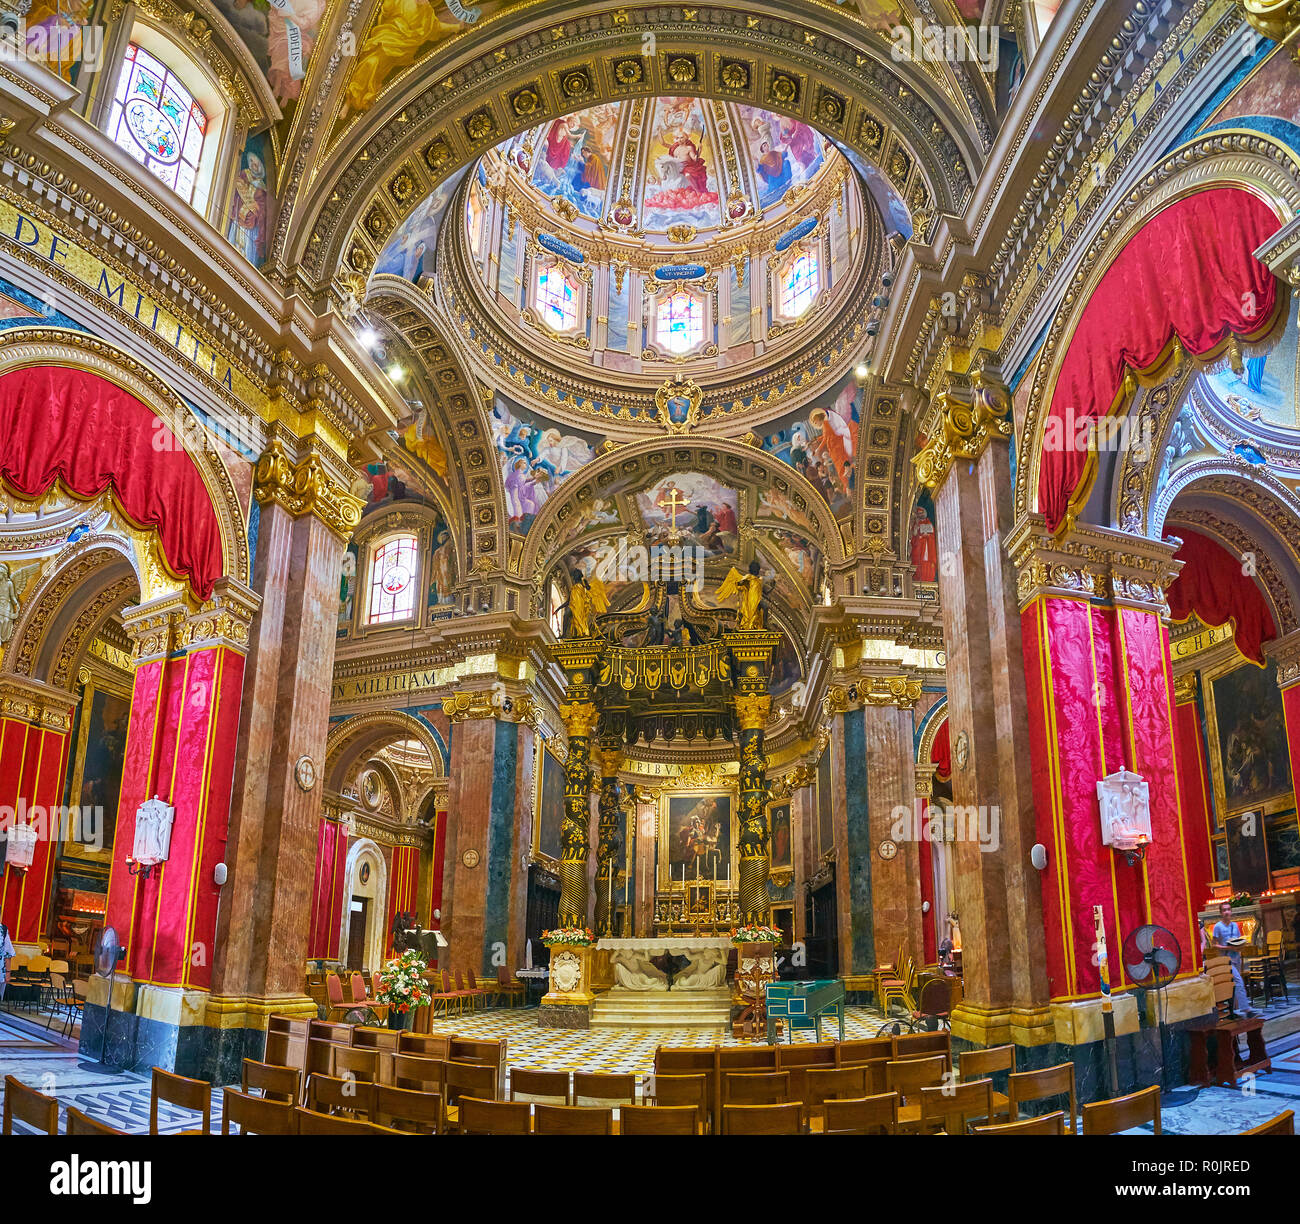 VICTORIA, Malta - 15 Giugno 2018 : la stupefacente interno barocco di St George Basilica con aview sull altare maggiore, il suo baldacchino ornati, esili colonne in pietra Foto Stock